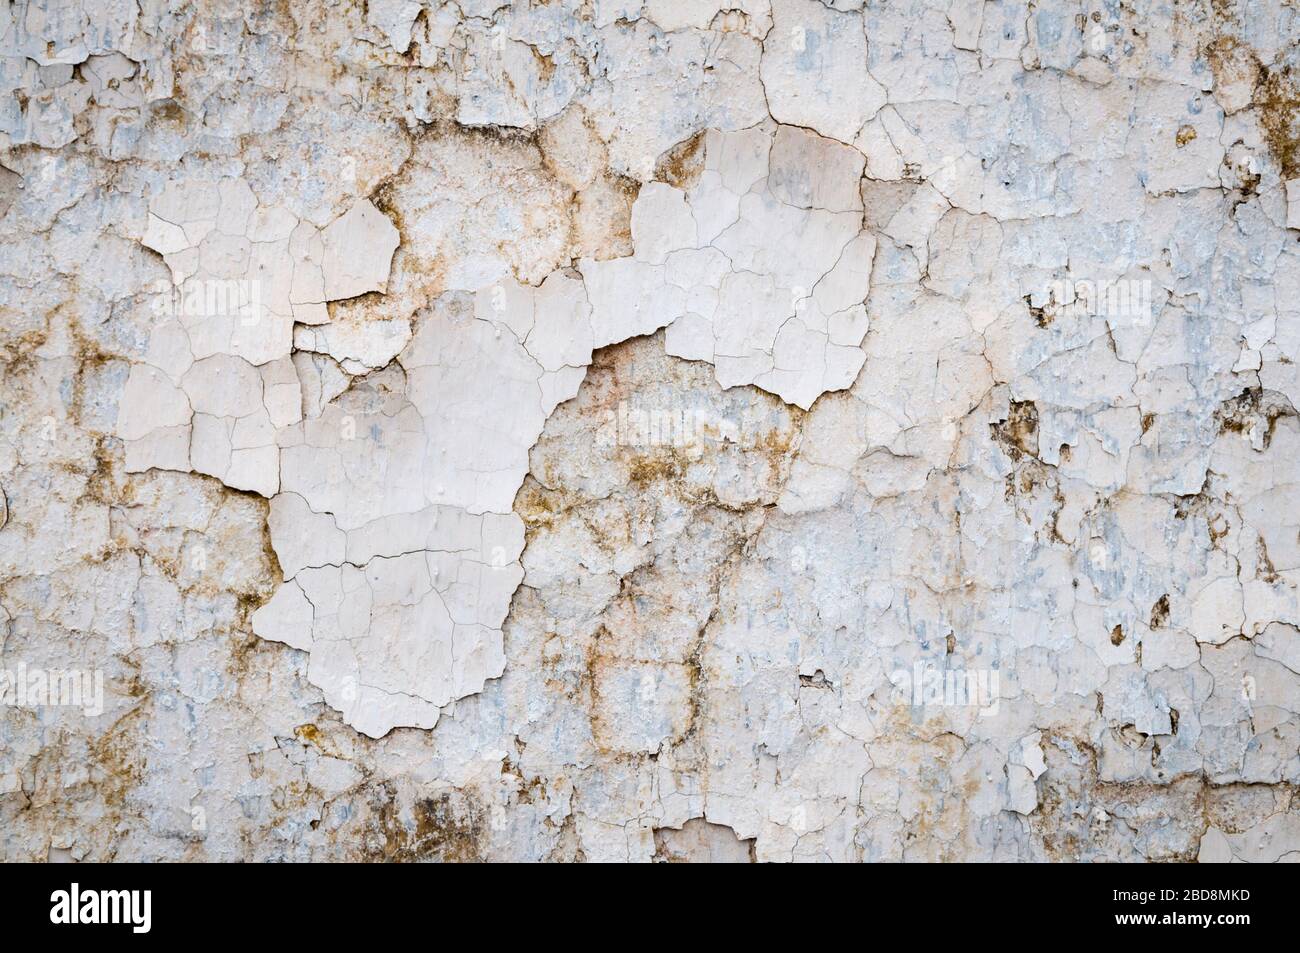 Vollrahmen Grunge Hintergrund der verwitterten Wand mit Brocken von weißer Farbe rissend weg Stockfoto